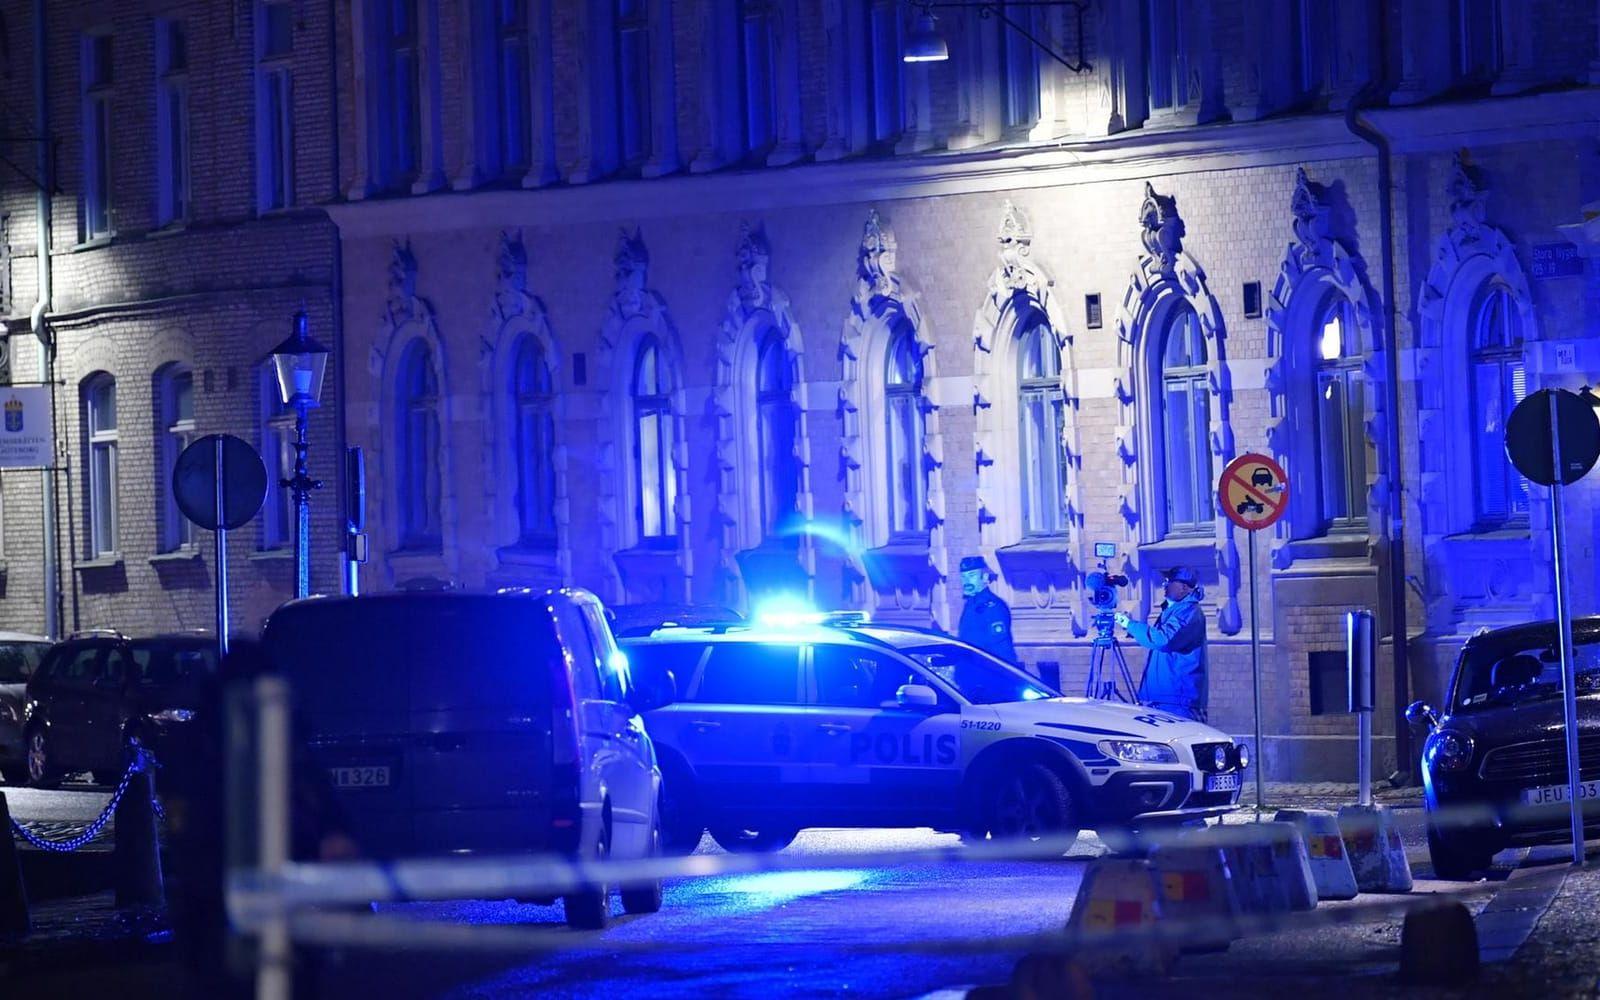 Tre män dömdes av Göteborgs tingsrätt för grovt olaga hot och försök till grov skadegörelse. Attacken mot synagogan i Göteborg betecknades som ett hatbrott.